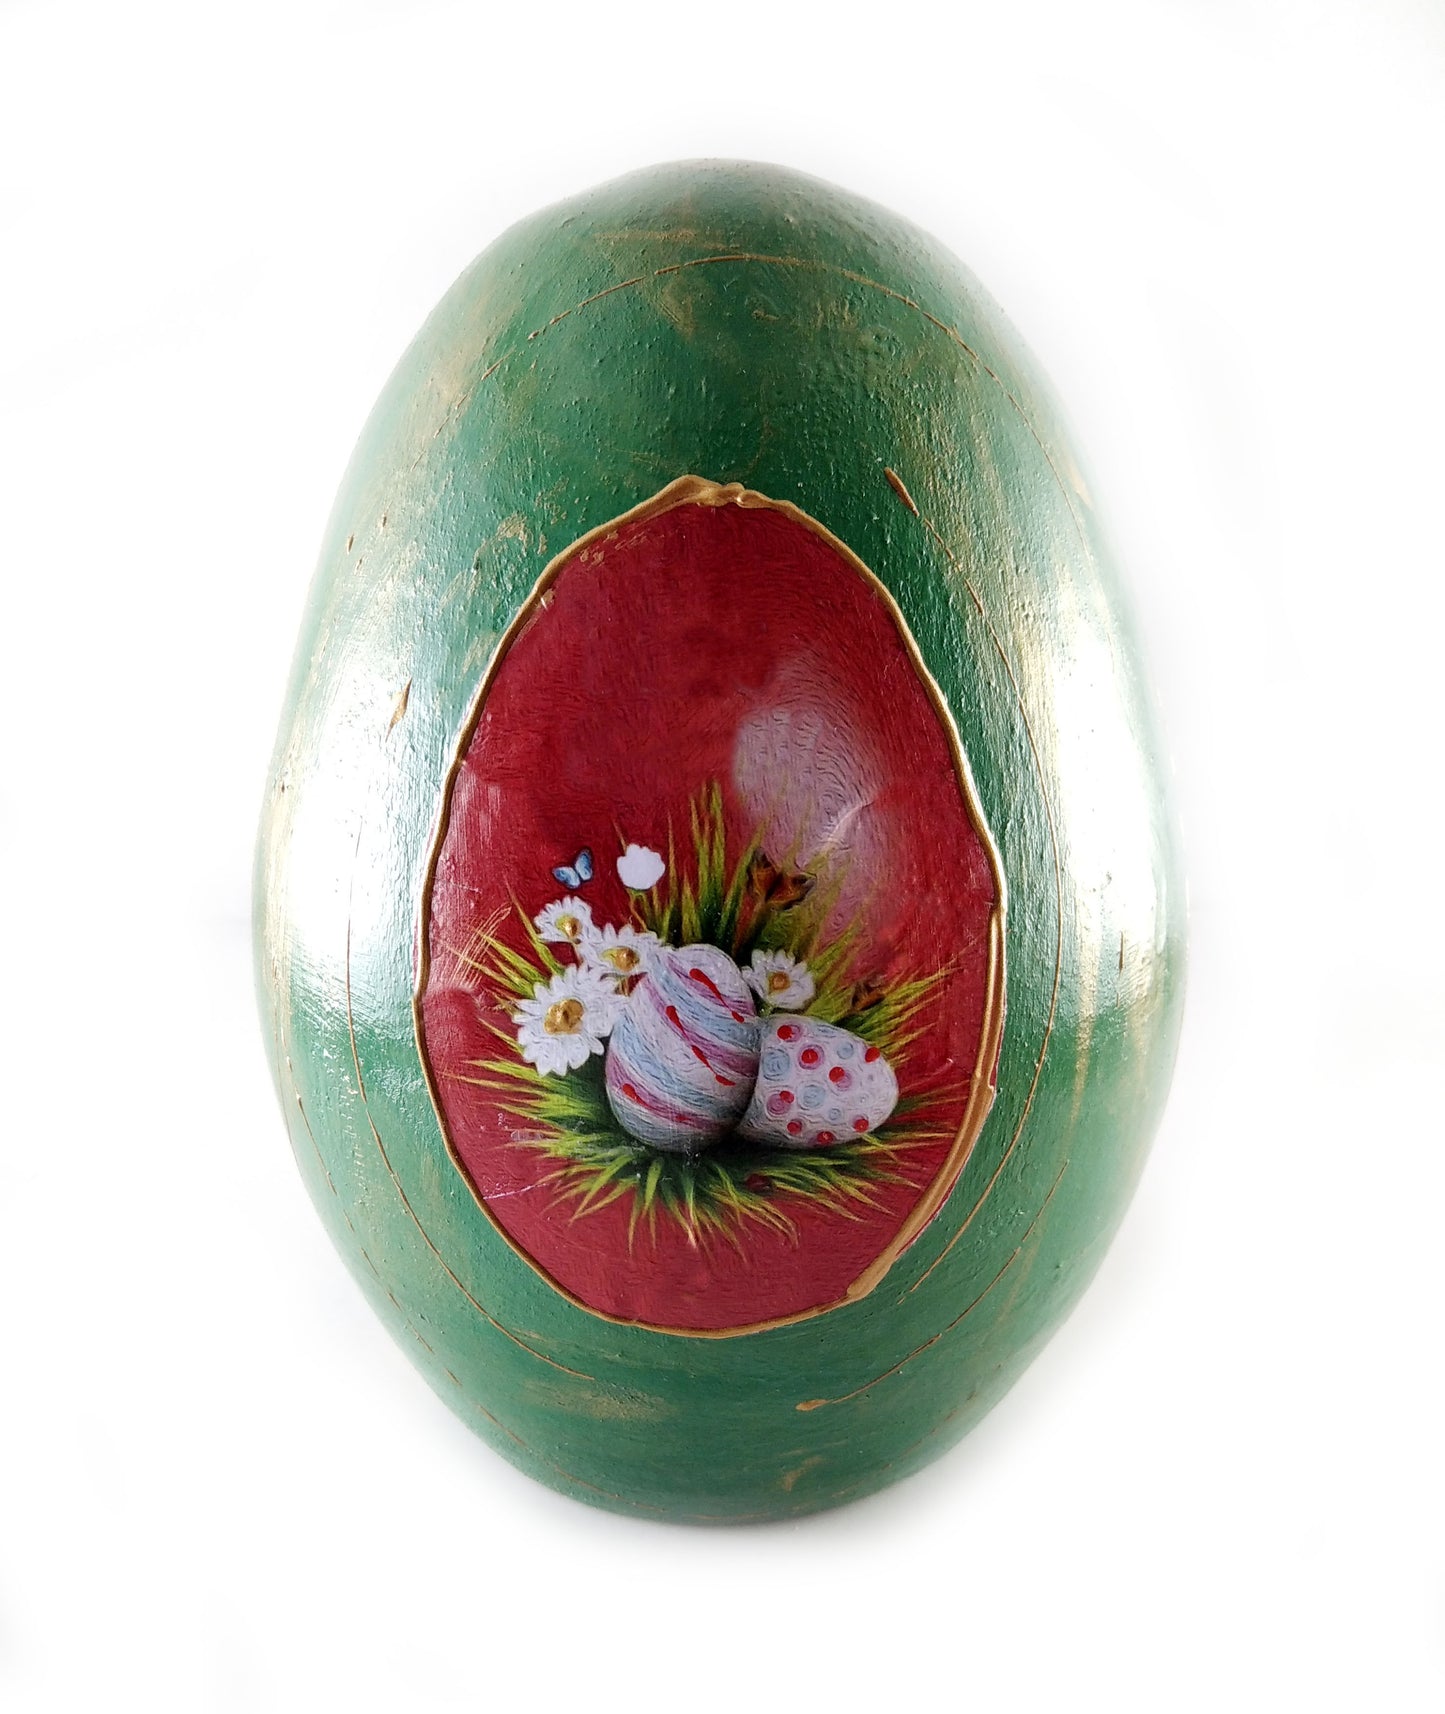 Ceramic Easter Egg